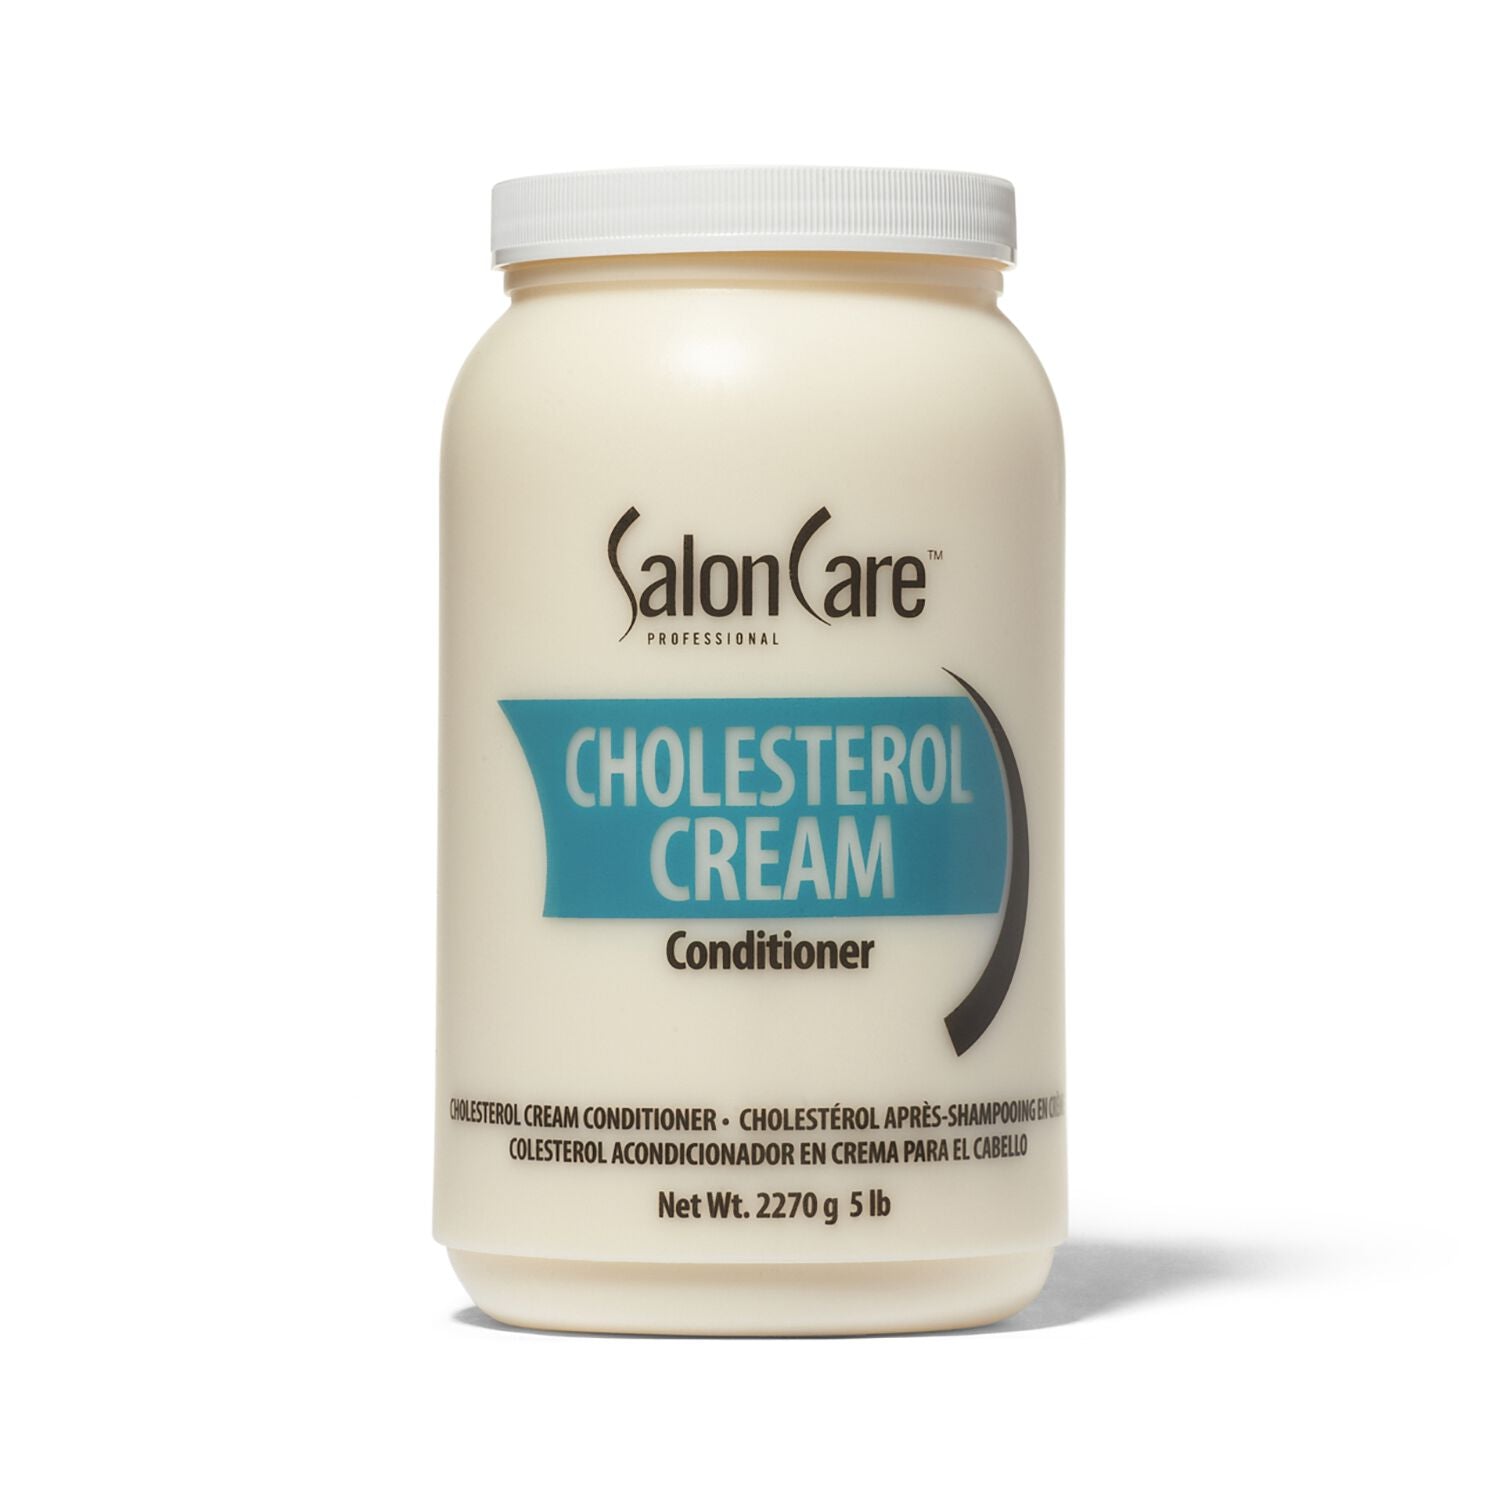 Salon Care Professional Cholesterol Cream Conditioner